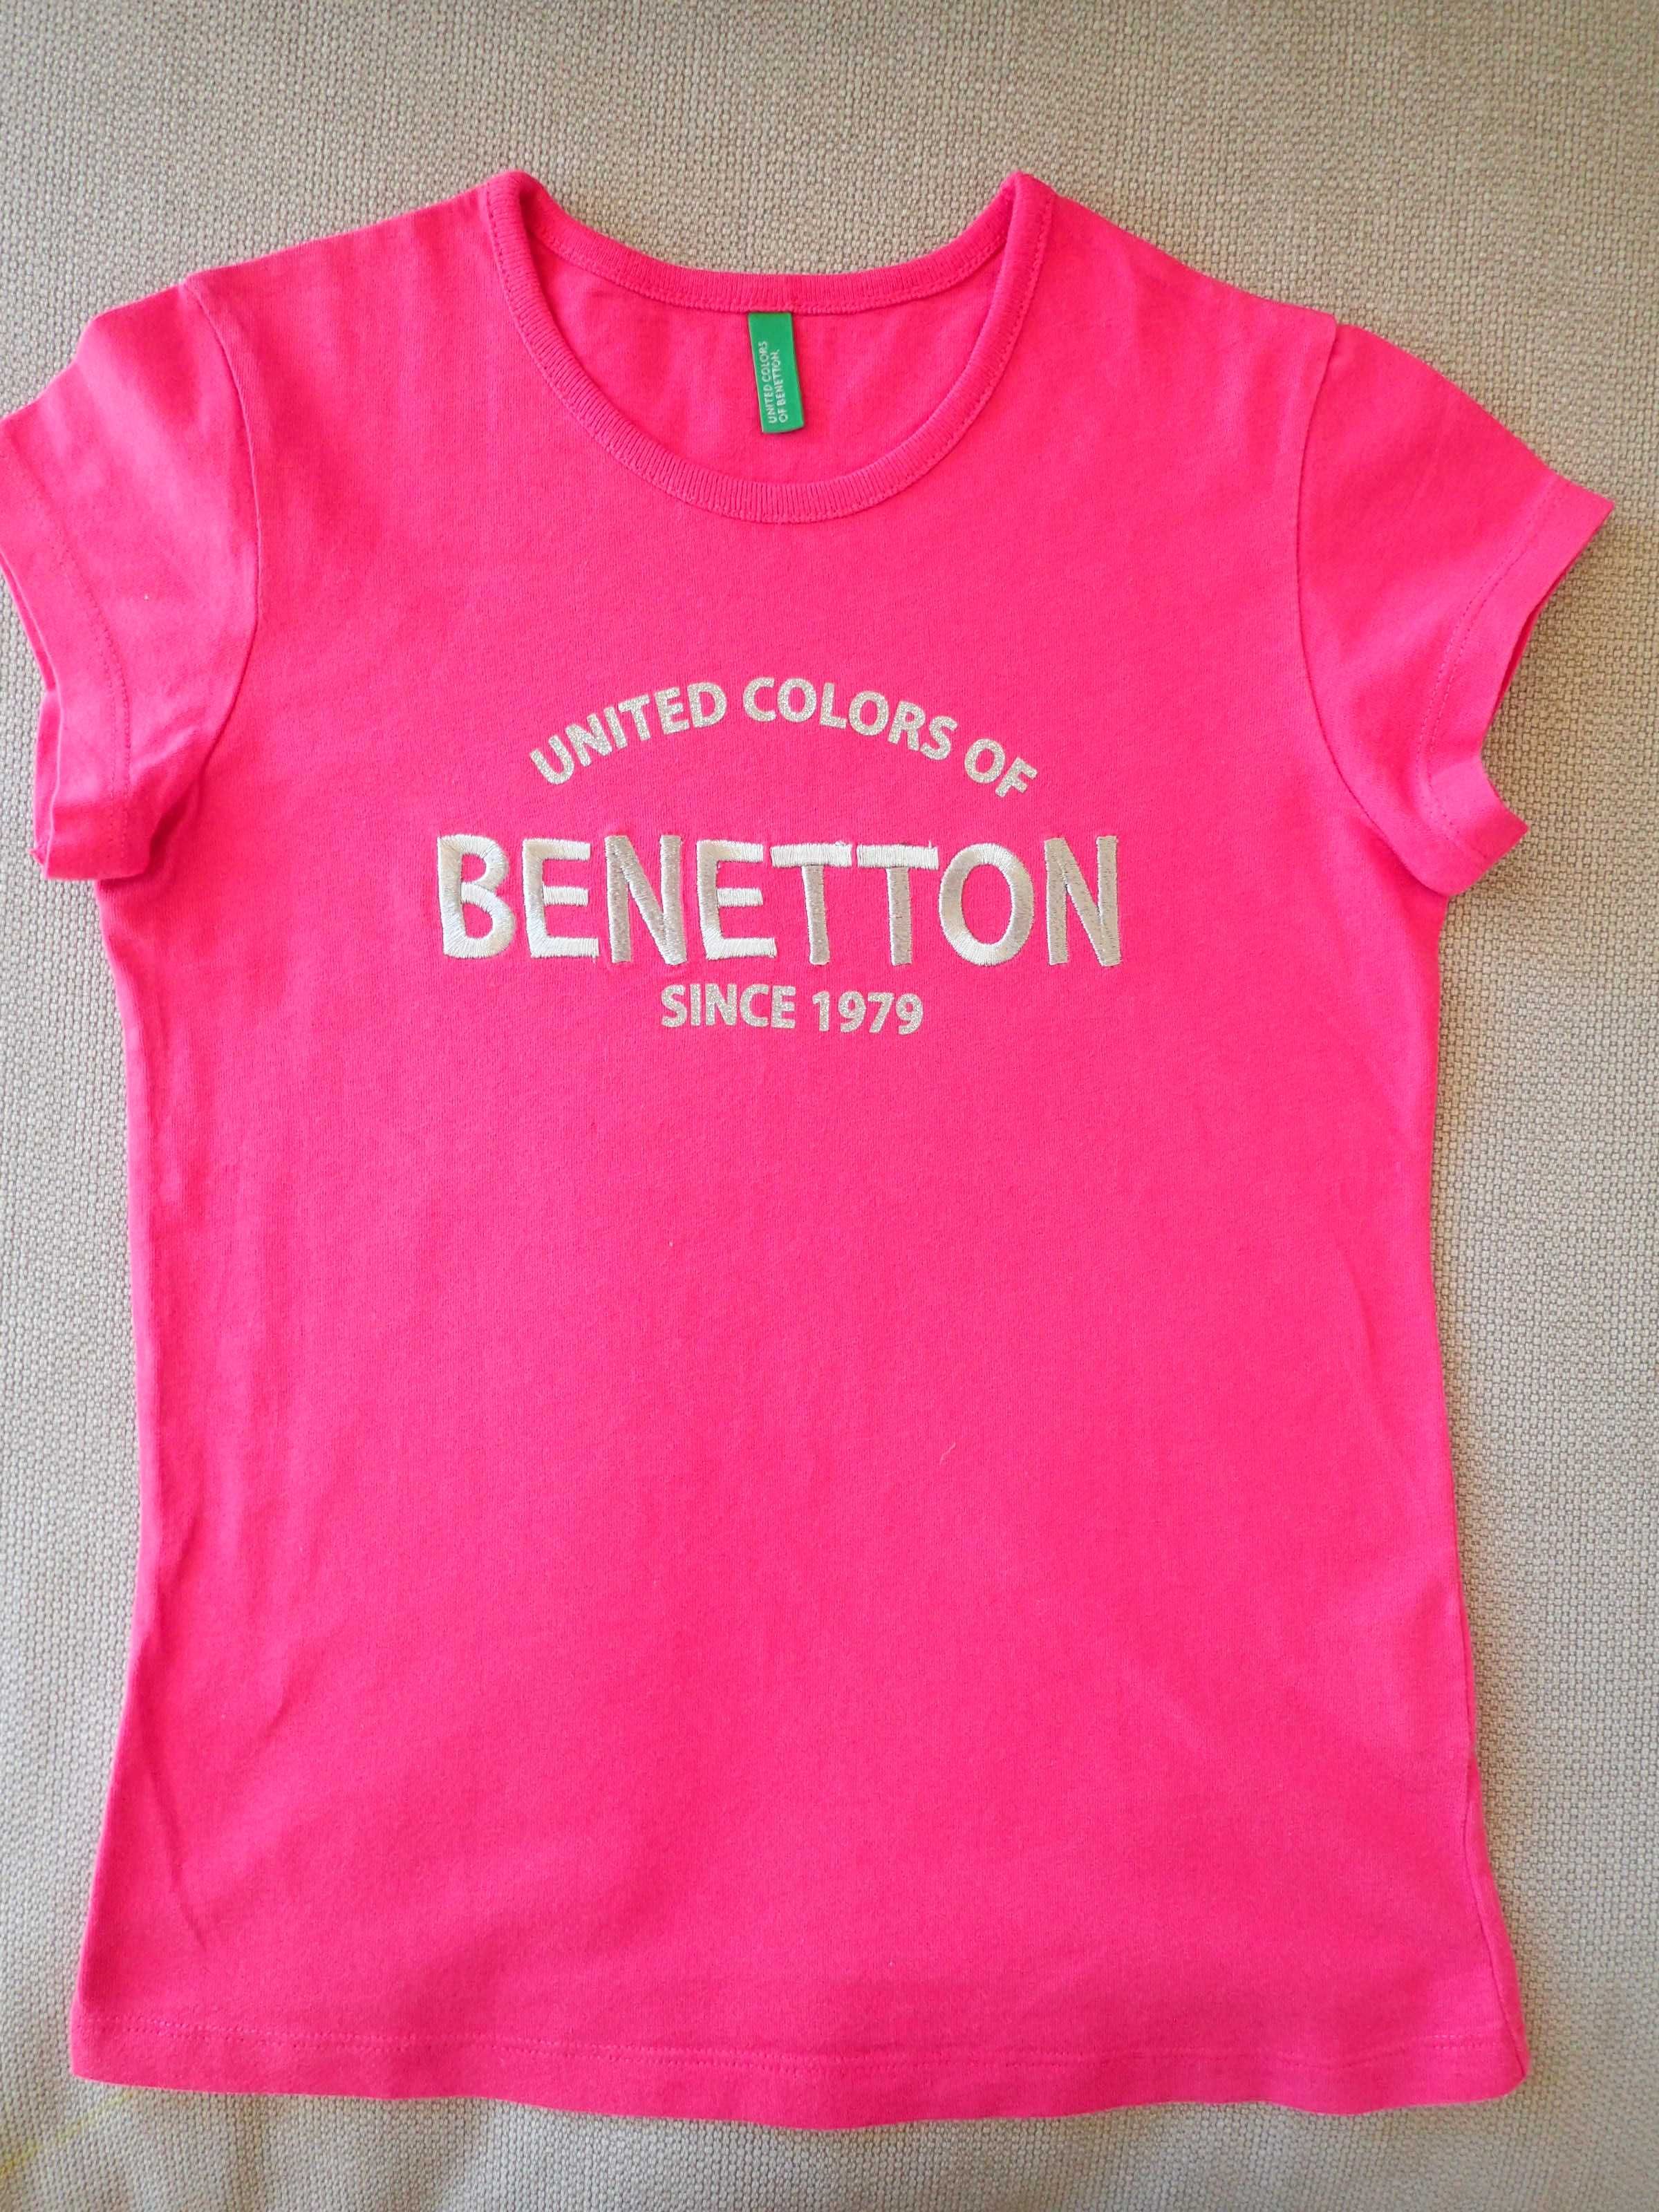 Benetton różowy T-shirt 130 cm M wyszyty napis